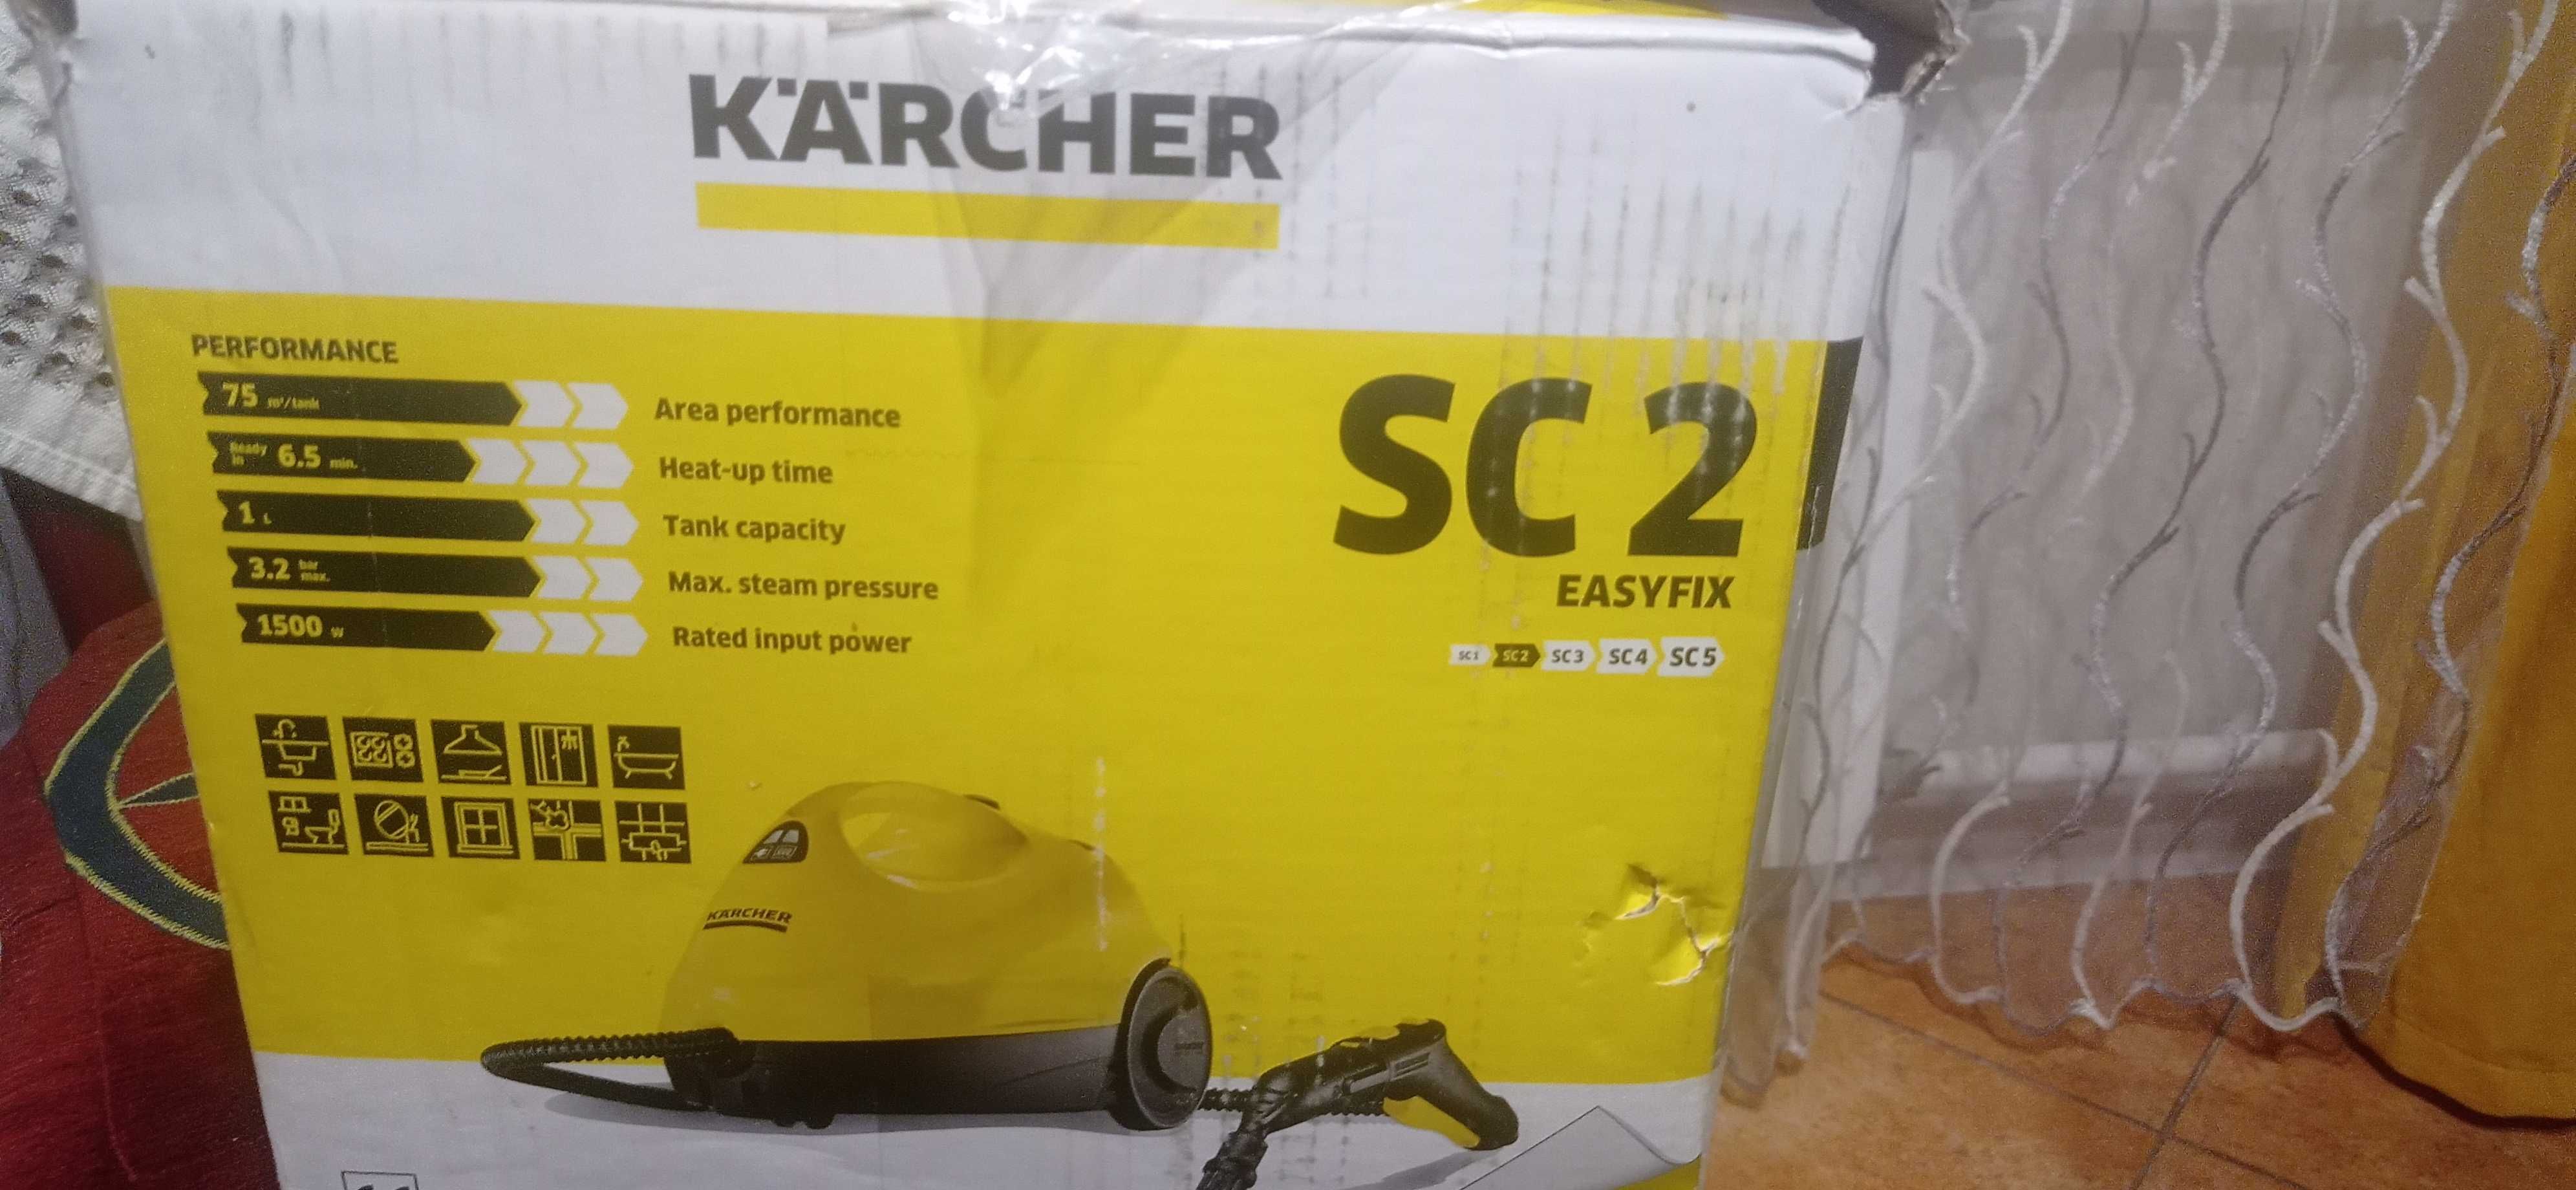 Пароочиститель Karcher SC 2